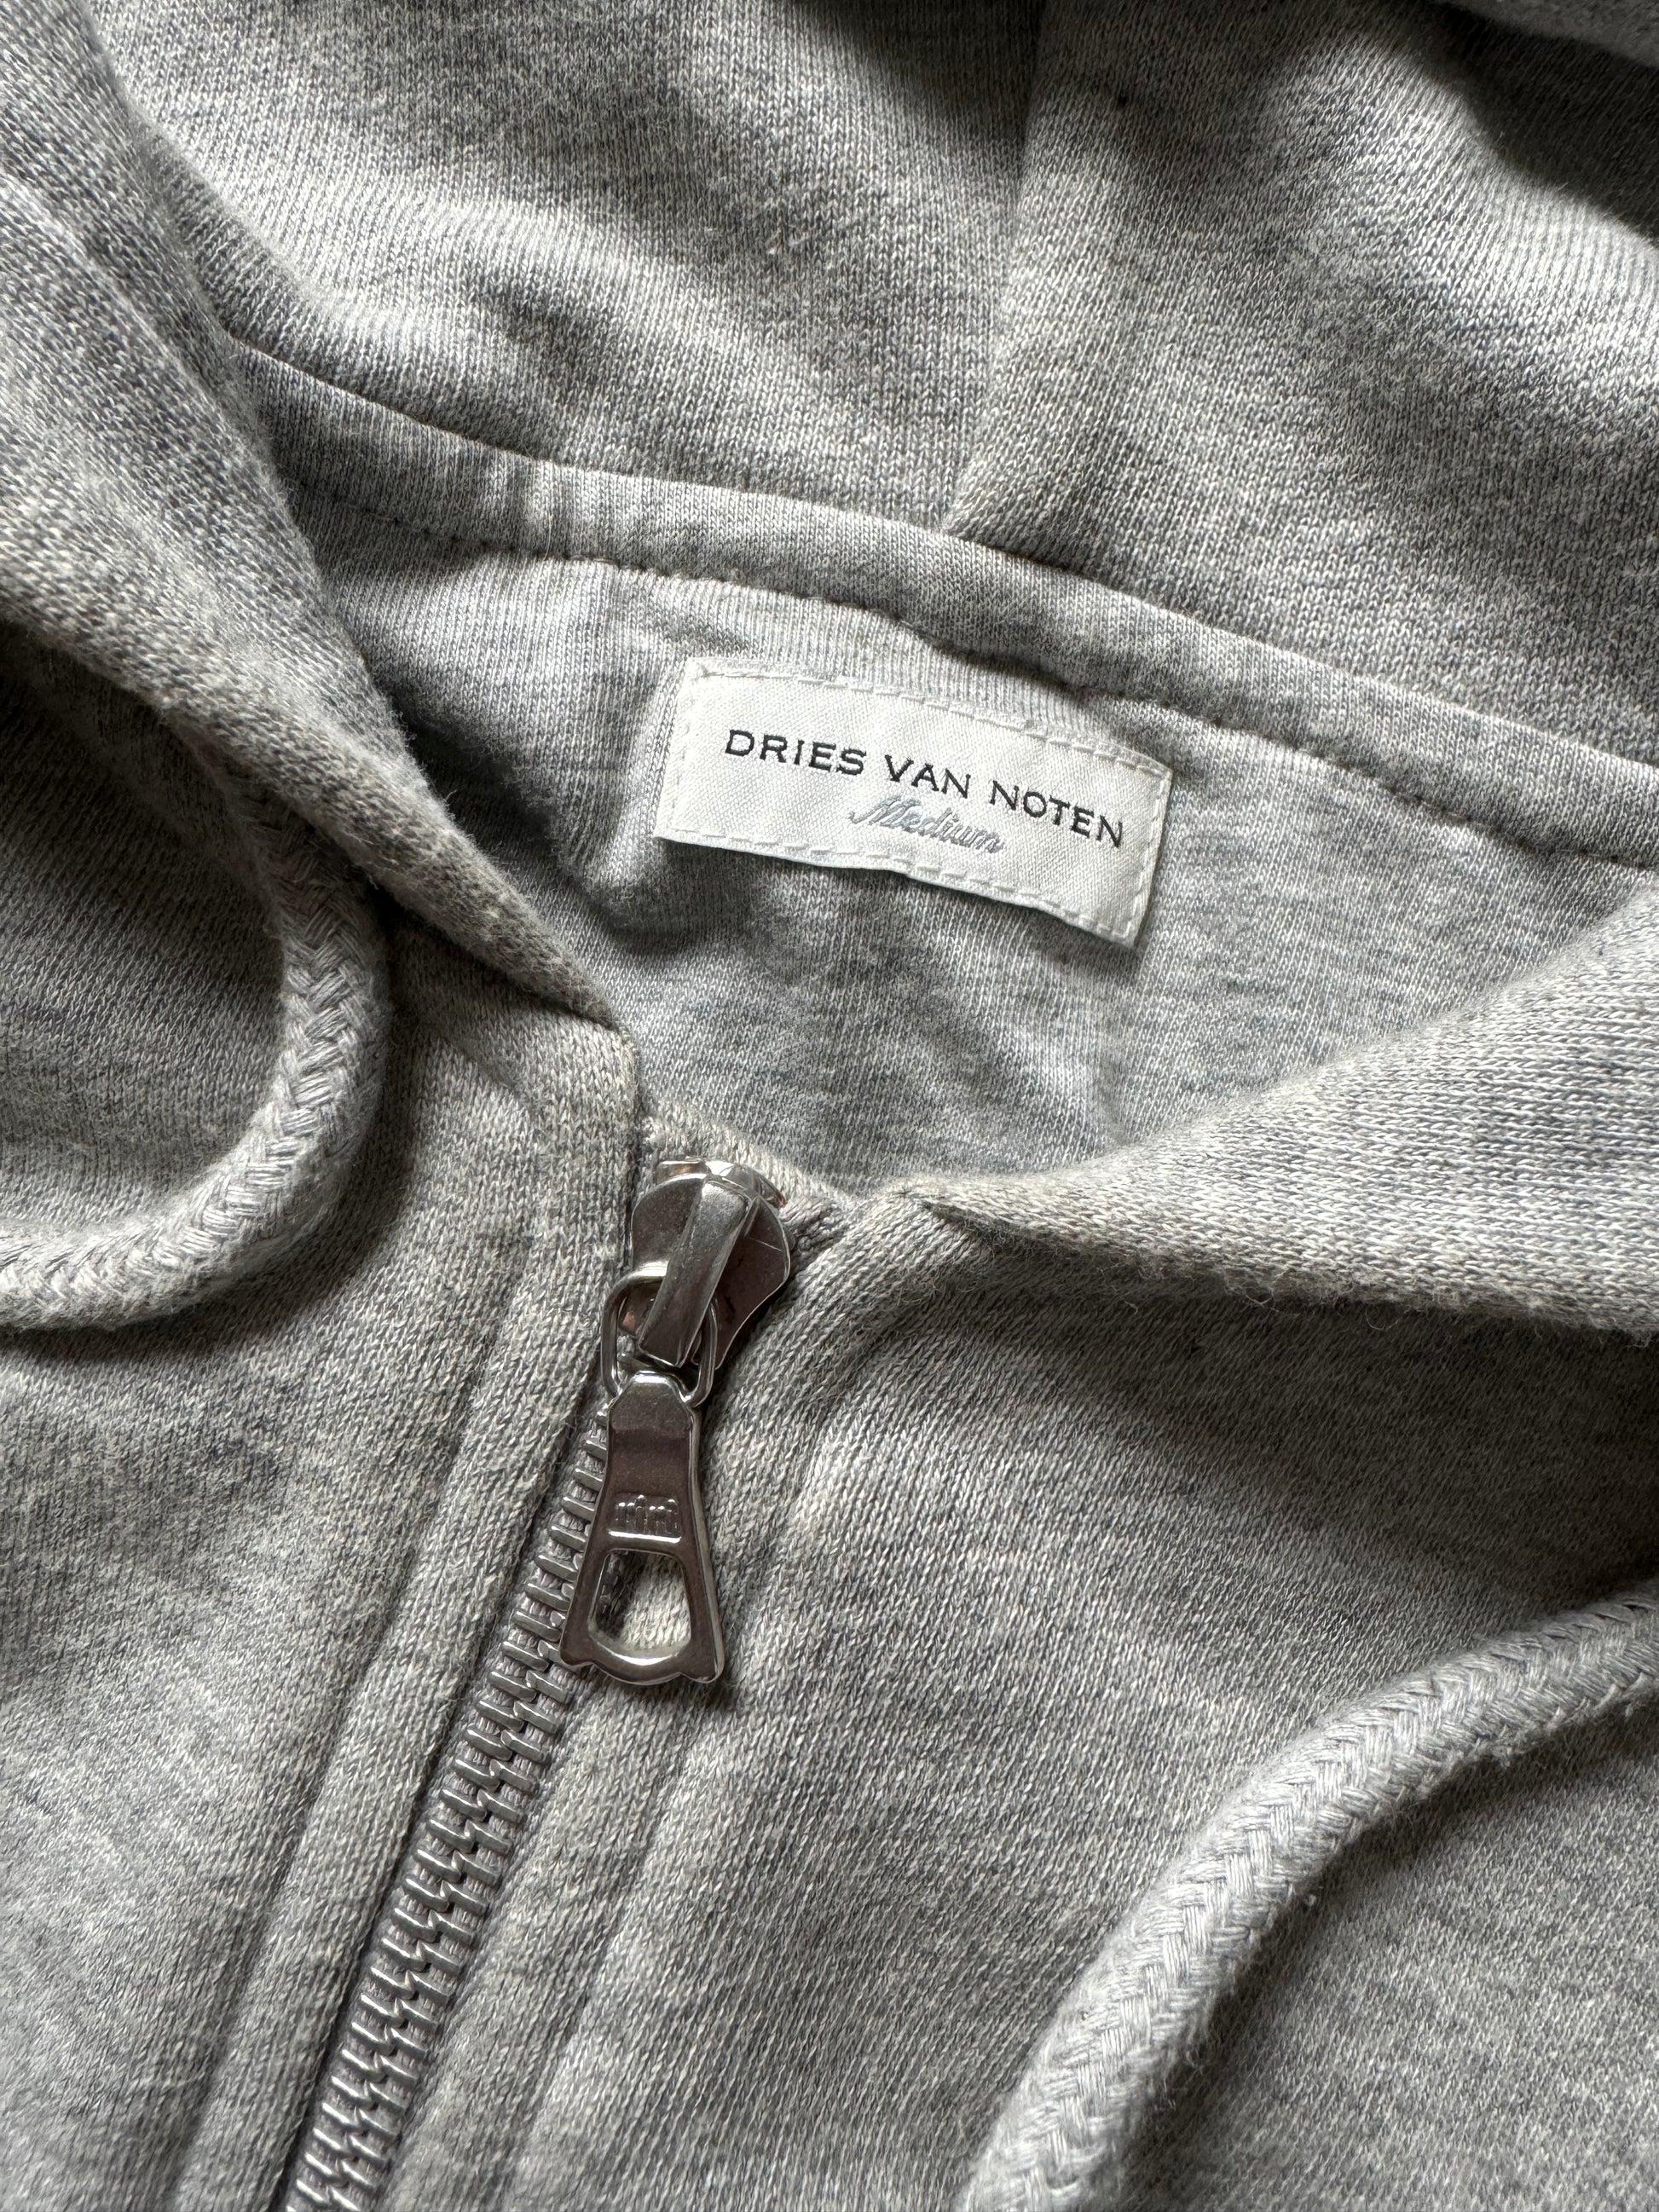 FW2020 Dries Van Noten Fur Hooded Grey Sweater (M) - 9